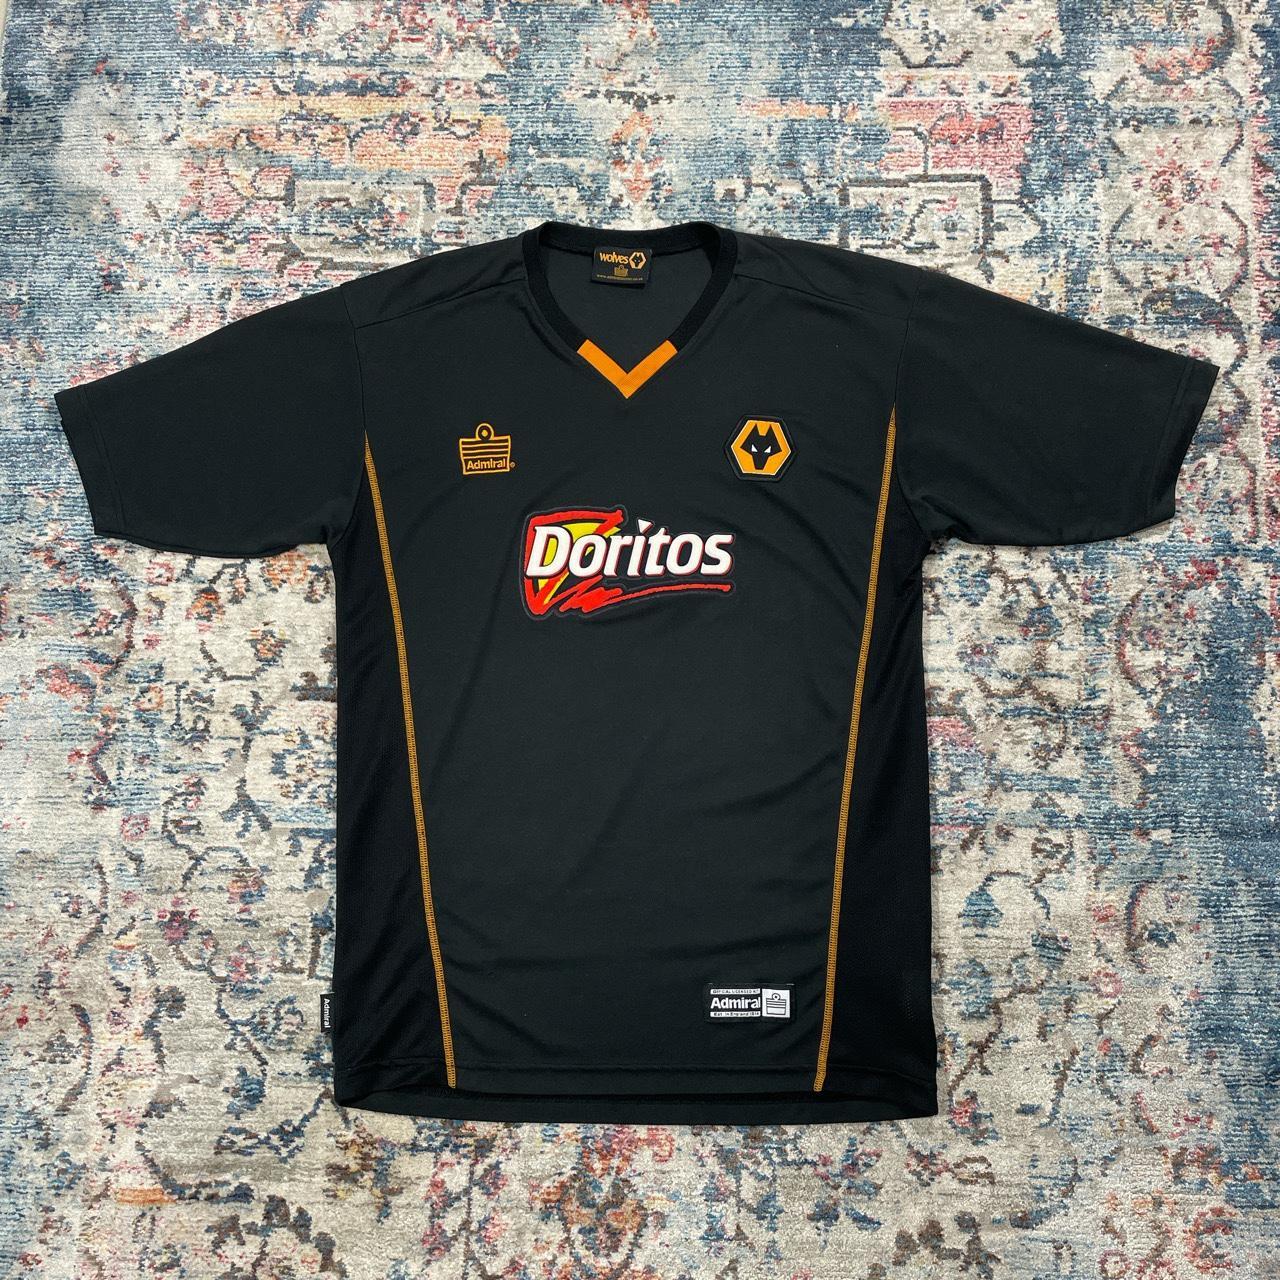 Wolverhampton Wanderers Doritos 2003/04 Away Football Shirt